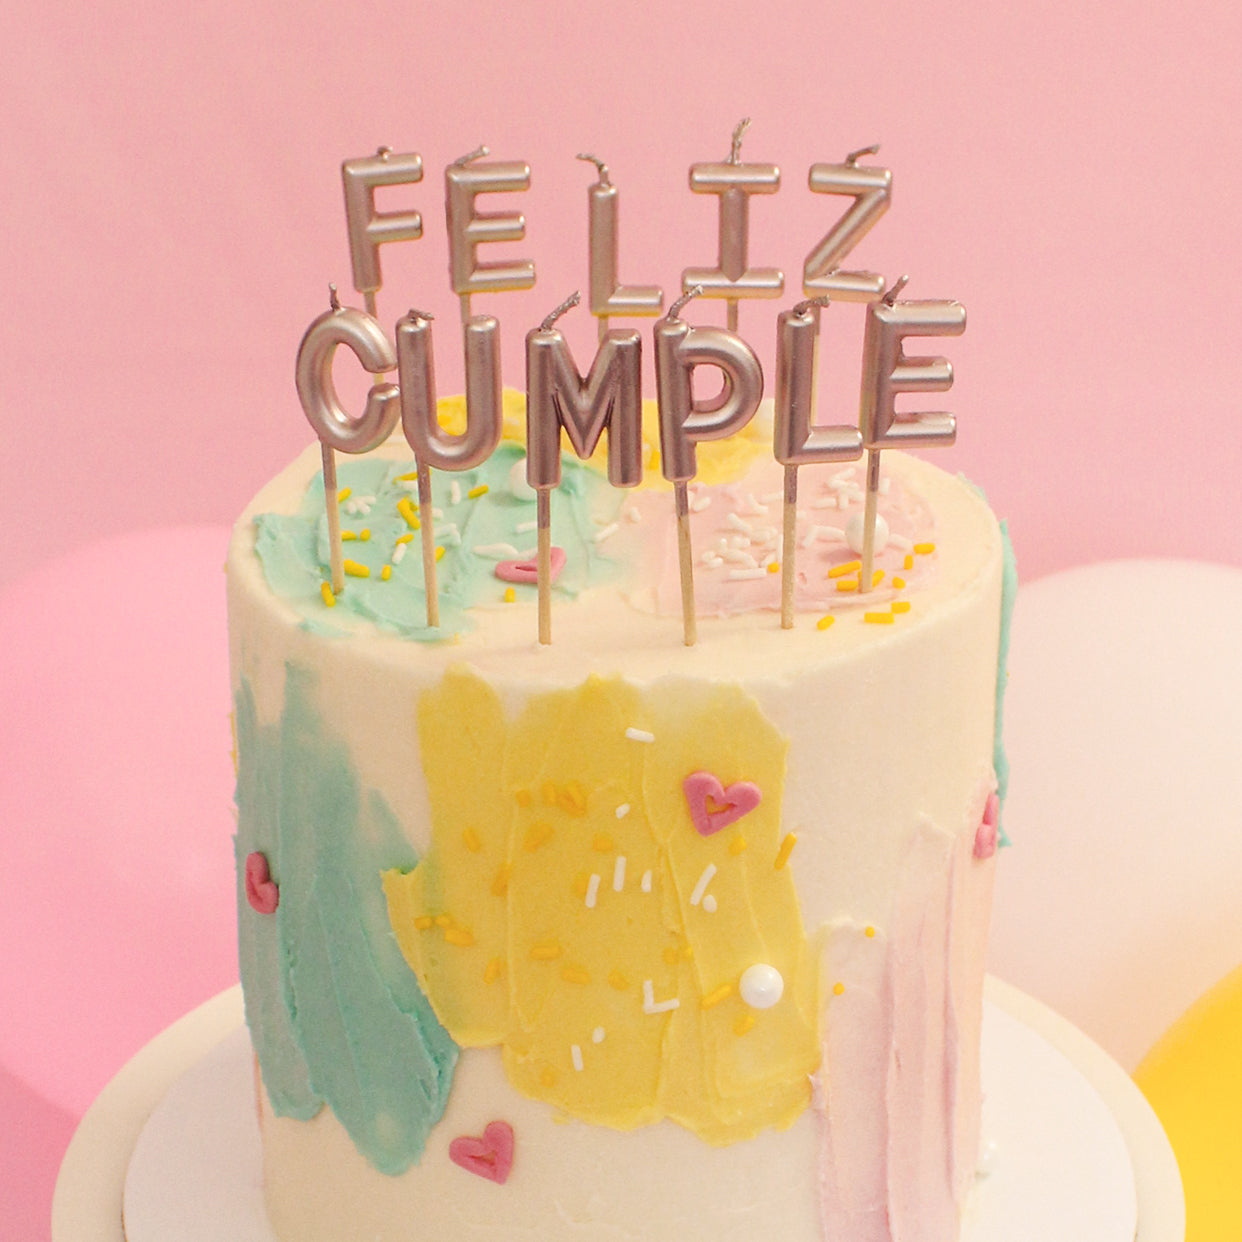  Velas de 50 cumpleaños para pastel, velas de oro rosa